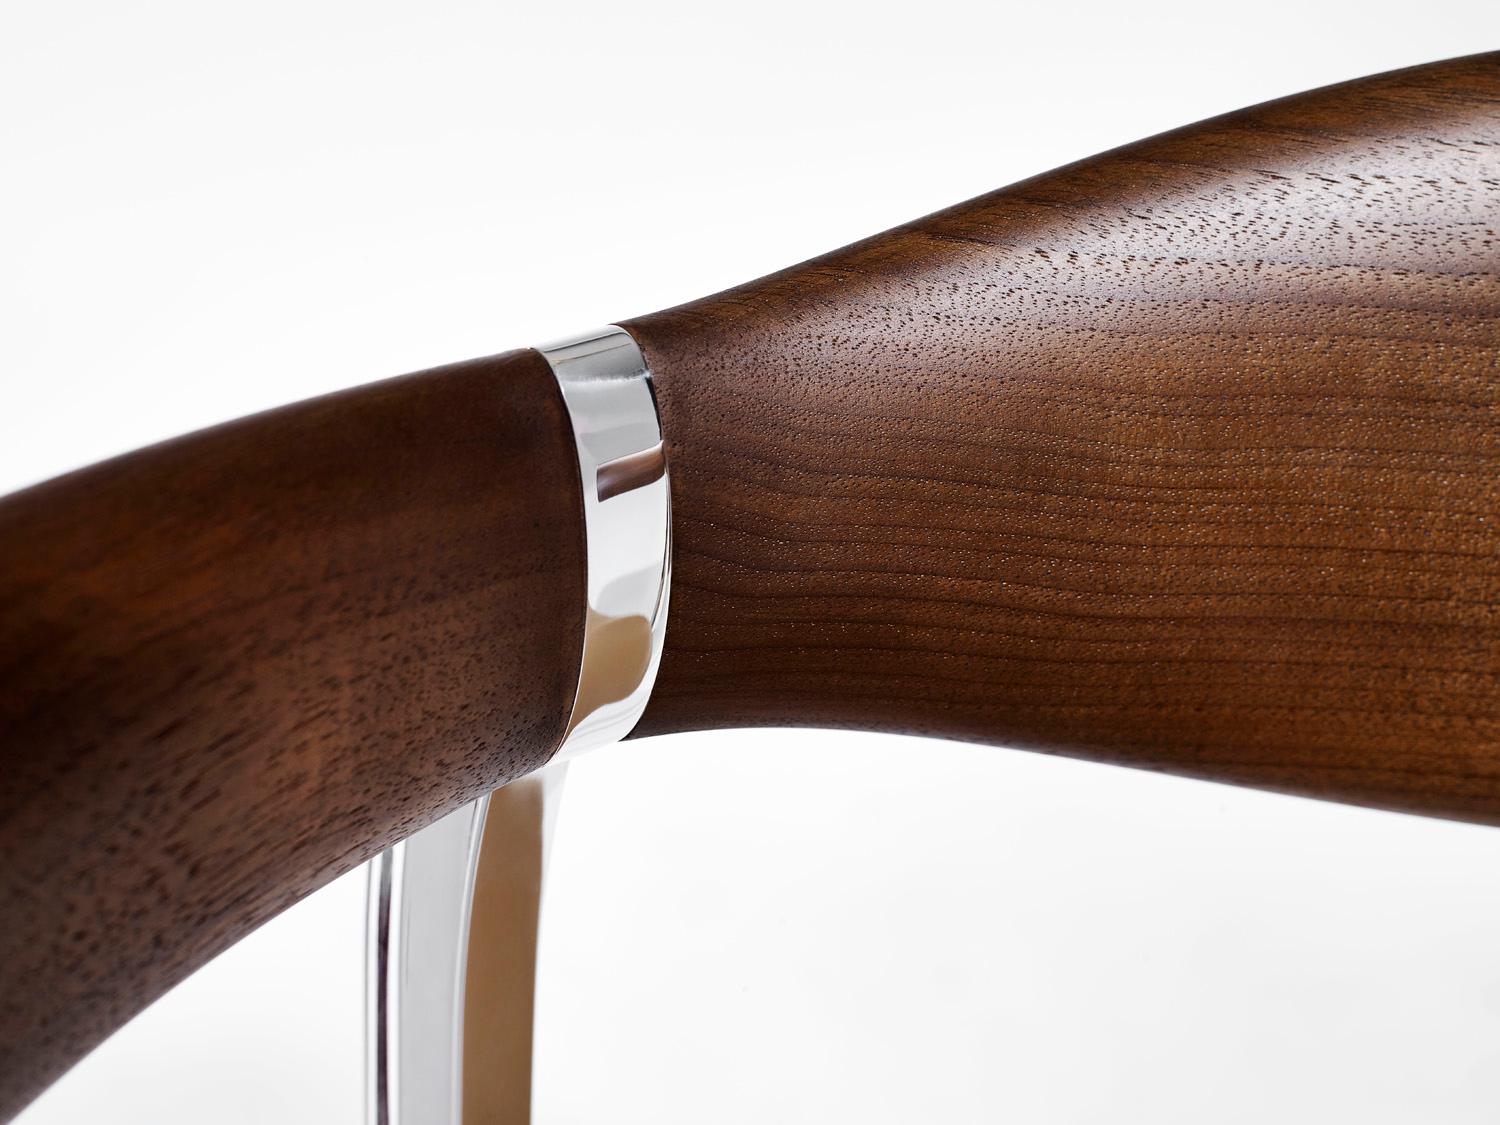 Der Barhocker Rifle ist aus Nussbaumholz, gebürstetem Messing und poliertem Aluminium gefertigt und verfügt über eine verstellbare Sitzhöhe, die ihn ideal für Ihre Hausbar macht.

Die geschwungene Sitzfläche des Stuhls und die markanten